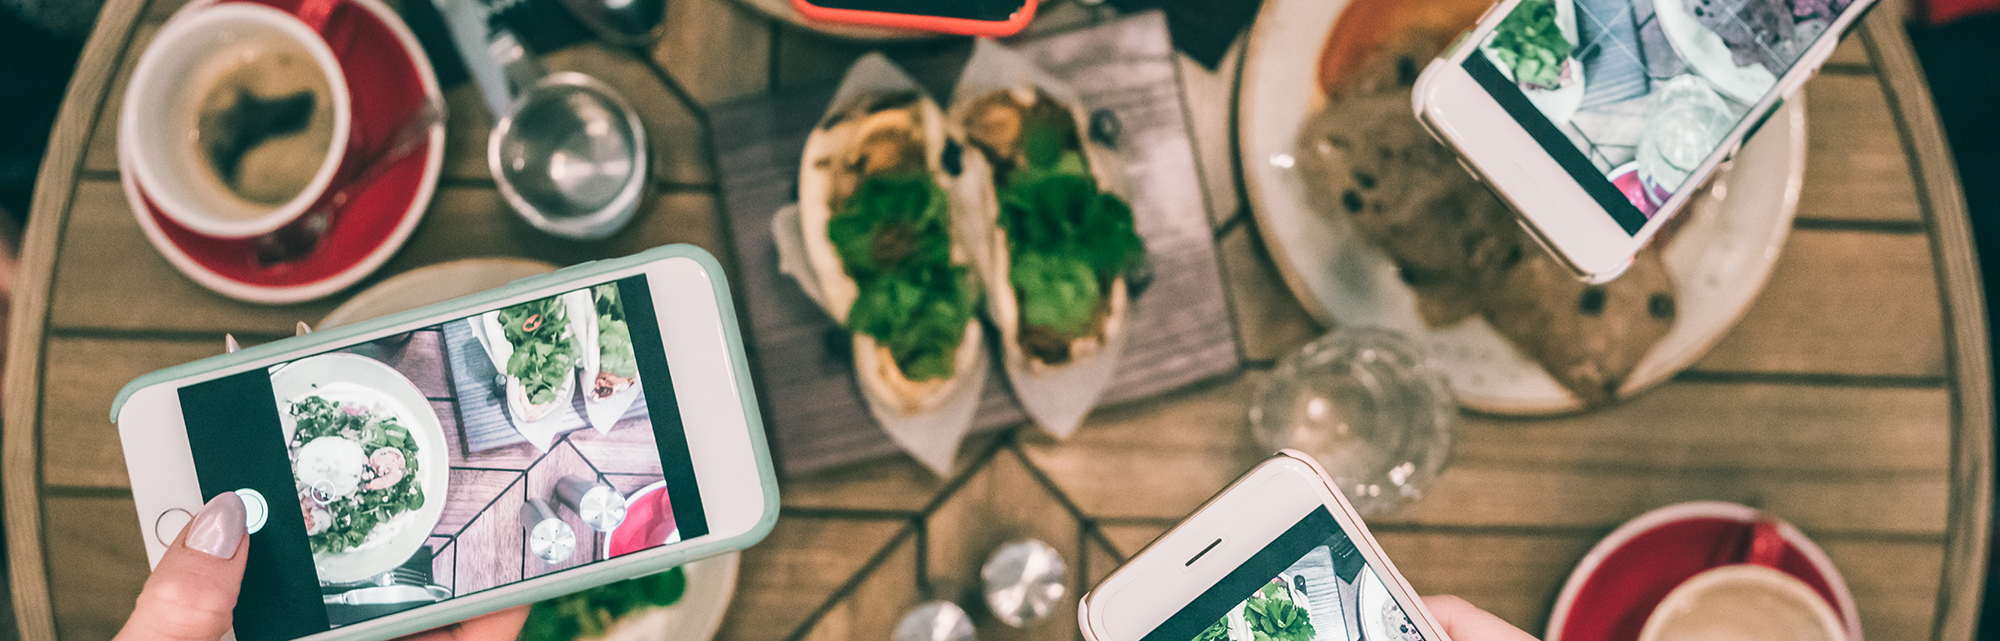 10 Social Media Tips for Restaurants in 2021 - Chef Works